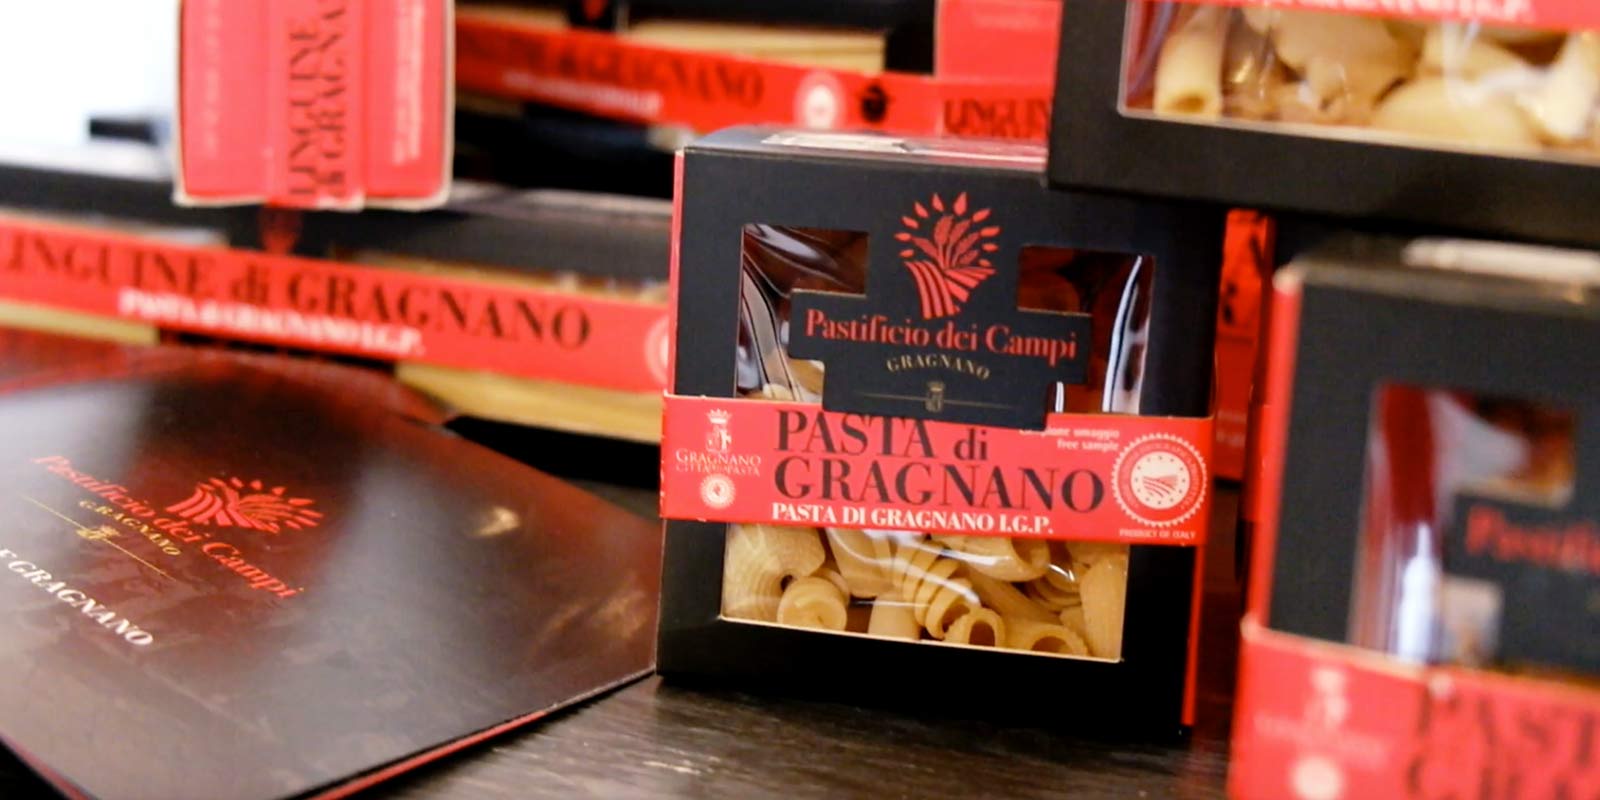 Pastifico dei Campi - Pasta di Gragnano IGP De Pastificio dei Campi produceert enkele Italiaanse klassiekers en enkele originele creaties. De pasta is gemaakt van 100% Italiaanse durumtarwegries en geëxtrudeerd met bronzen mallen.